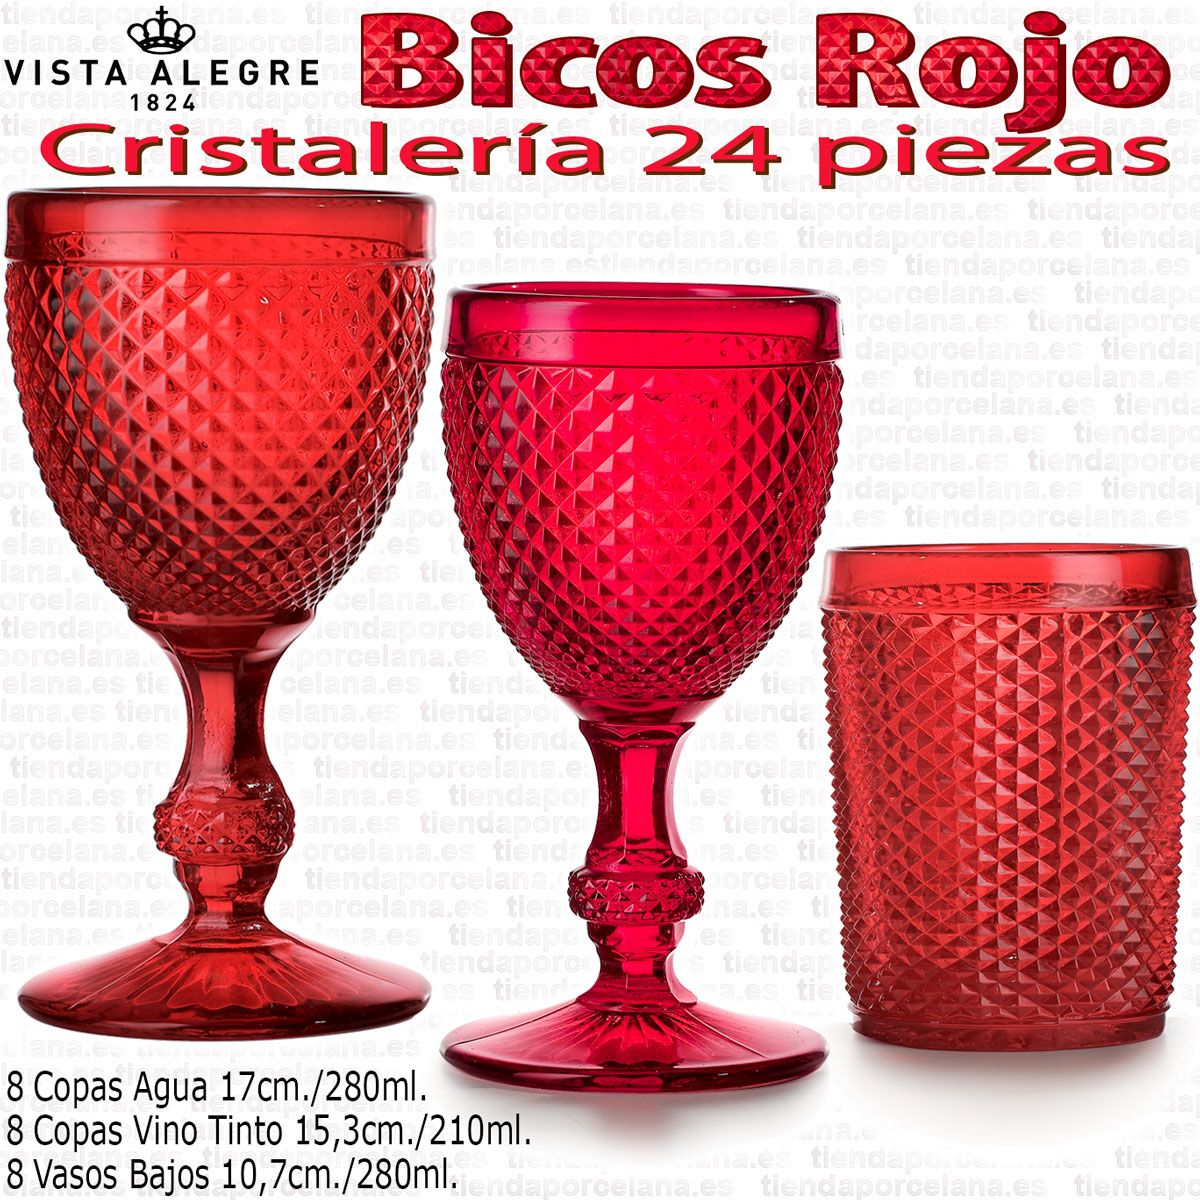 https://www.tiendaporcelana.es/pub/media/catalog/product/cache/c9e0b0ef589f3508e5ba515cde53c5ff/r/o/rojo-cristaleria-24-piezas-bicos-picos-vidrio-vista-alegre.jpg